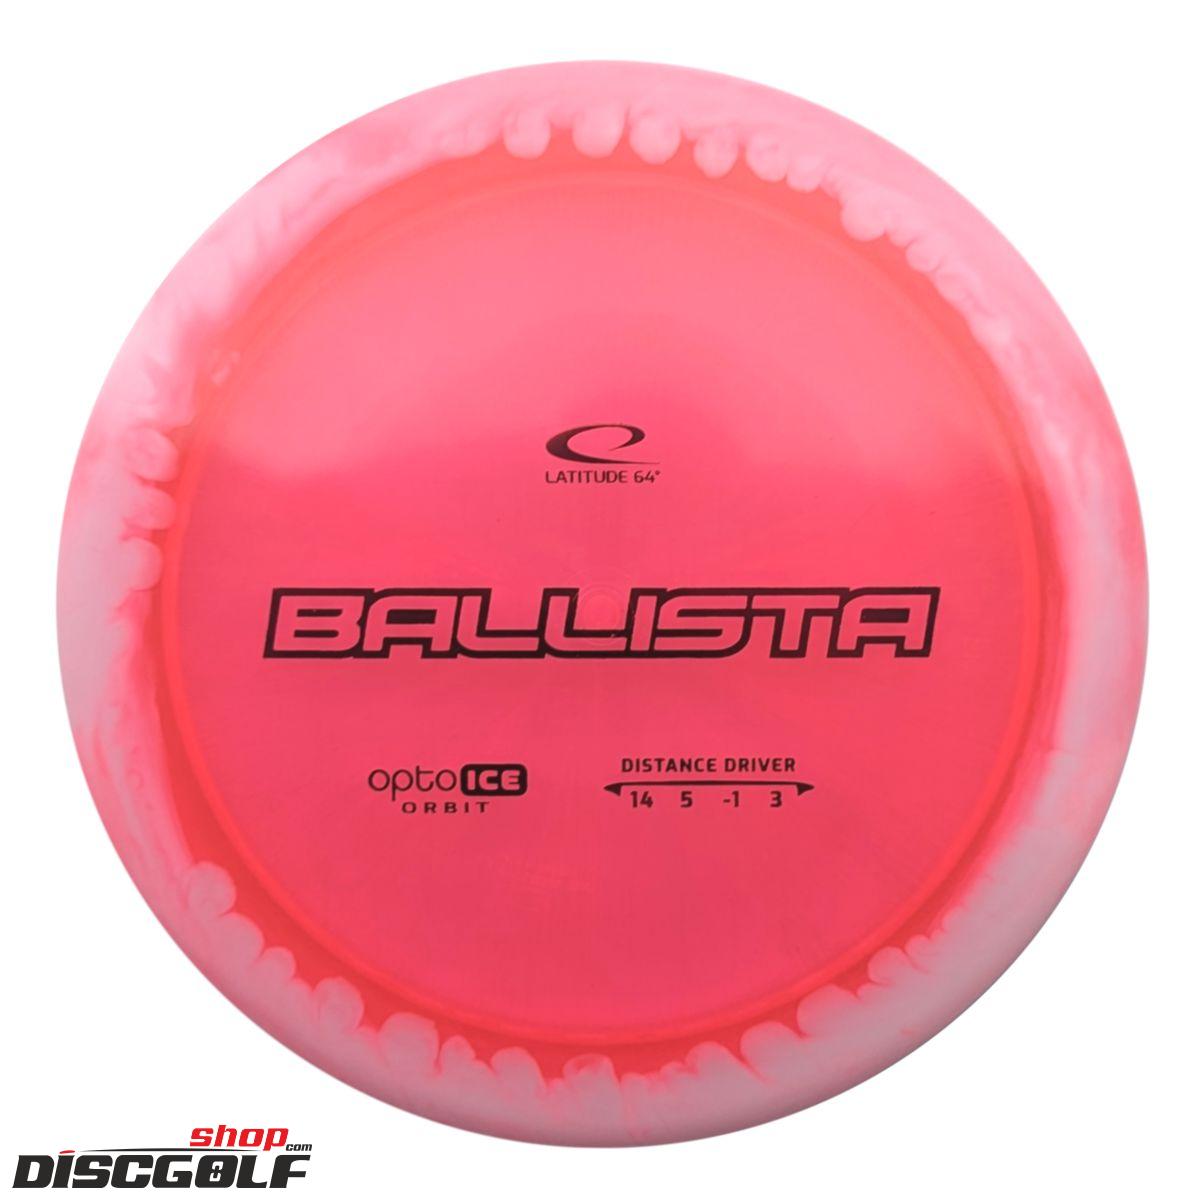 Latitude 64º Ballista Opto Ice Orbit (discgolf)